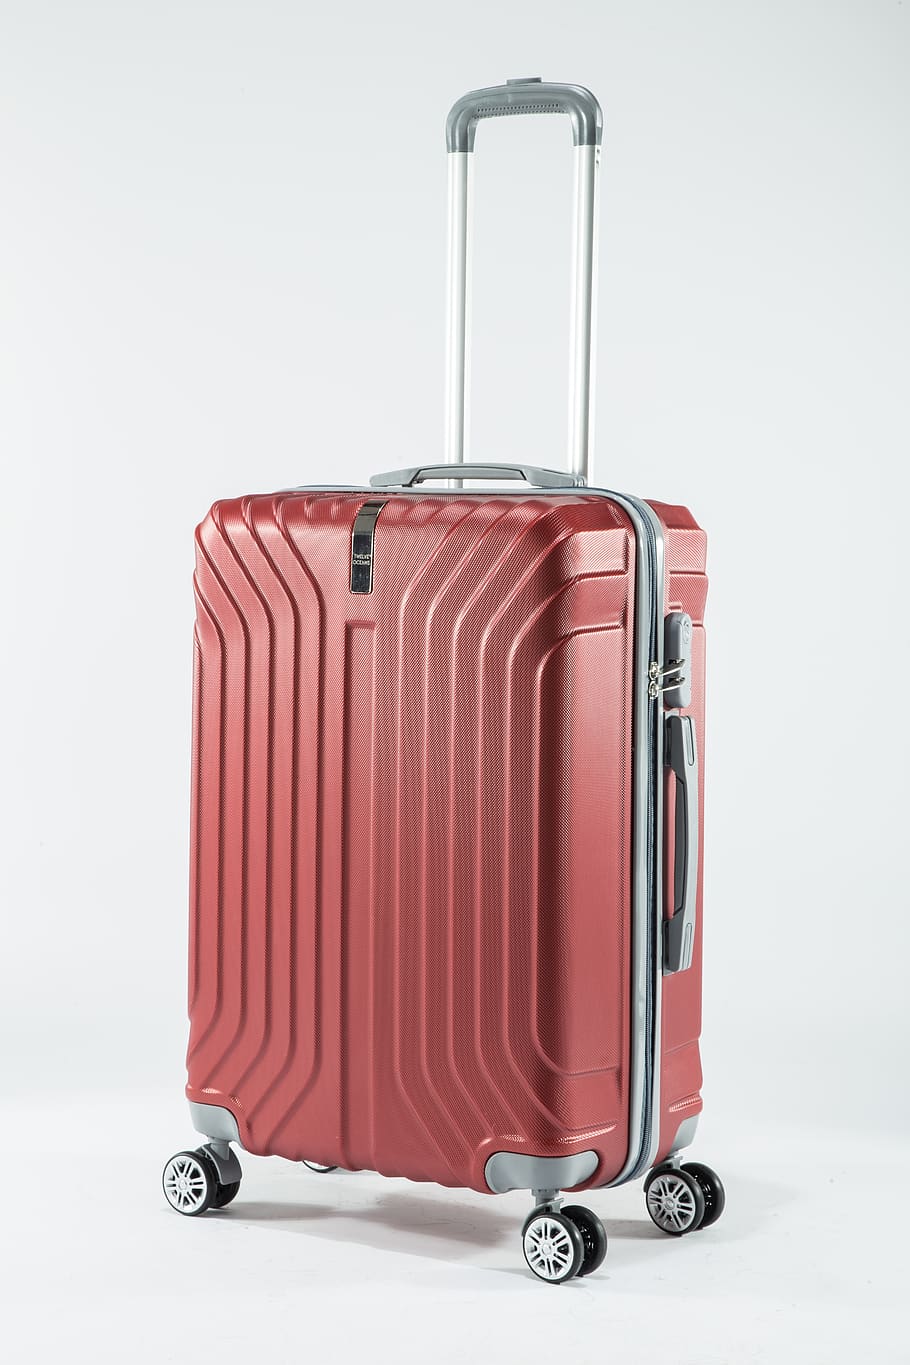 bolsa de viaje, dura y, bolsa, equipaje, maleta, viajar, en el interior, fondo blanco, recortar, equipaje con ruedas